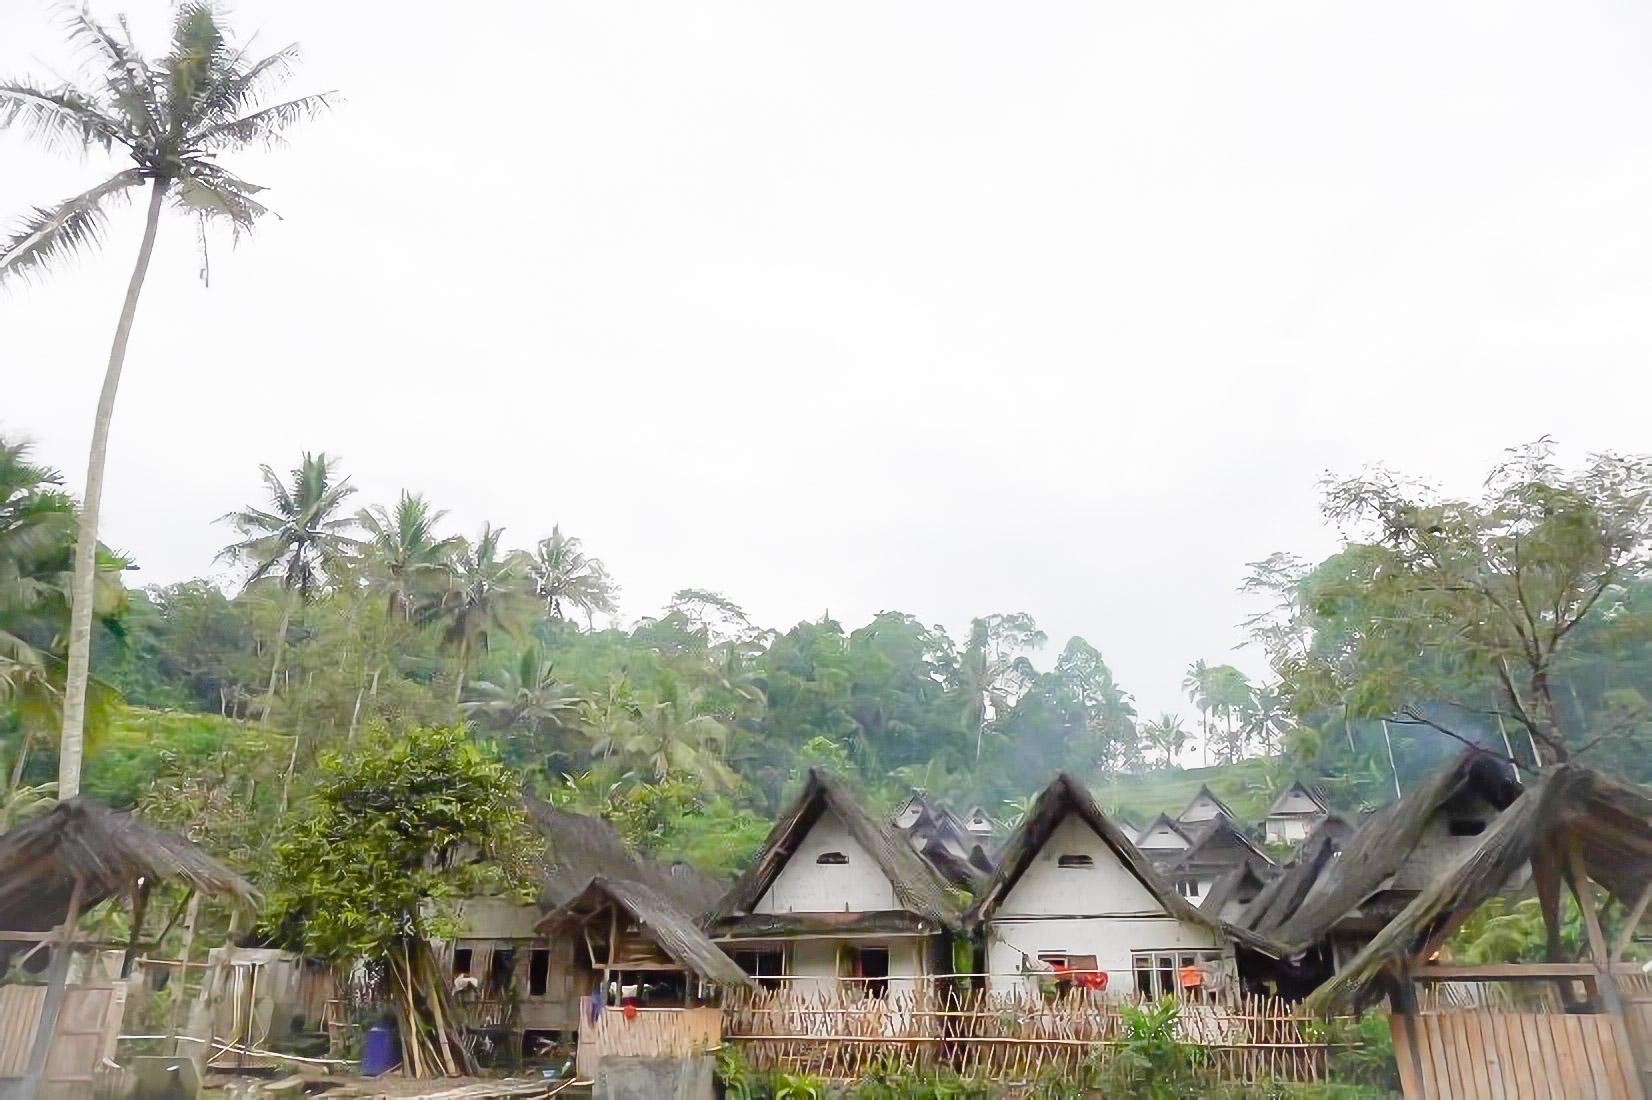 Rumah Penduduk Kampung Naga | Foto: Kemdikbud/kebudayaan.kemdikbud.go.id